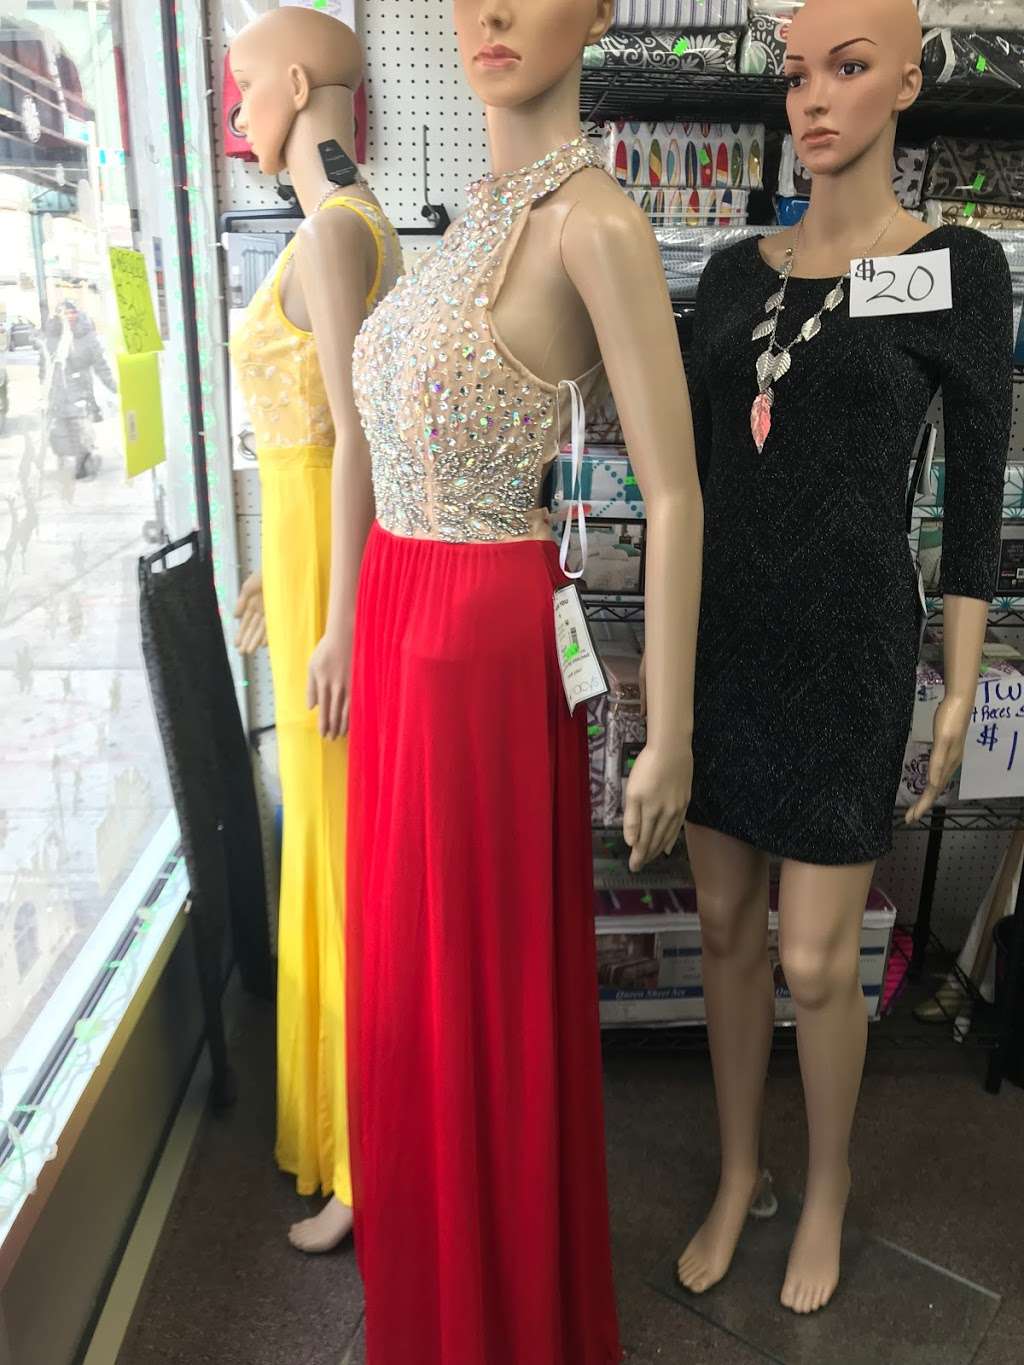 Elegance Fashion Outlet | 105-16 Liberty Ave, Ozone Park, NY 11417, USA | Phone: (718) 669-1303